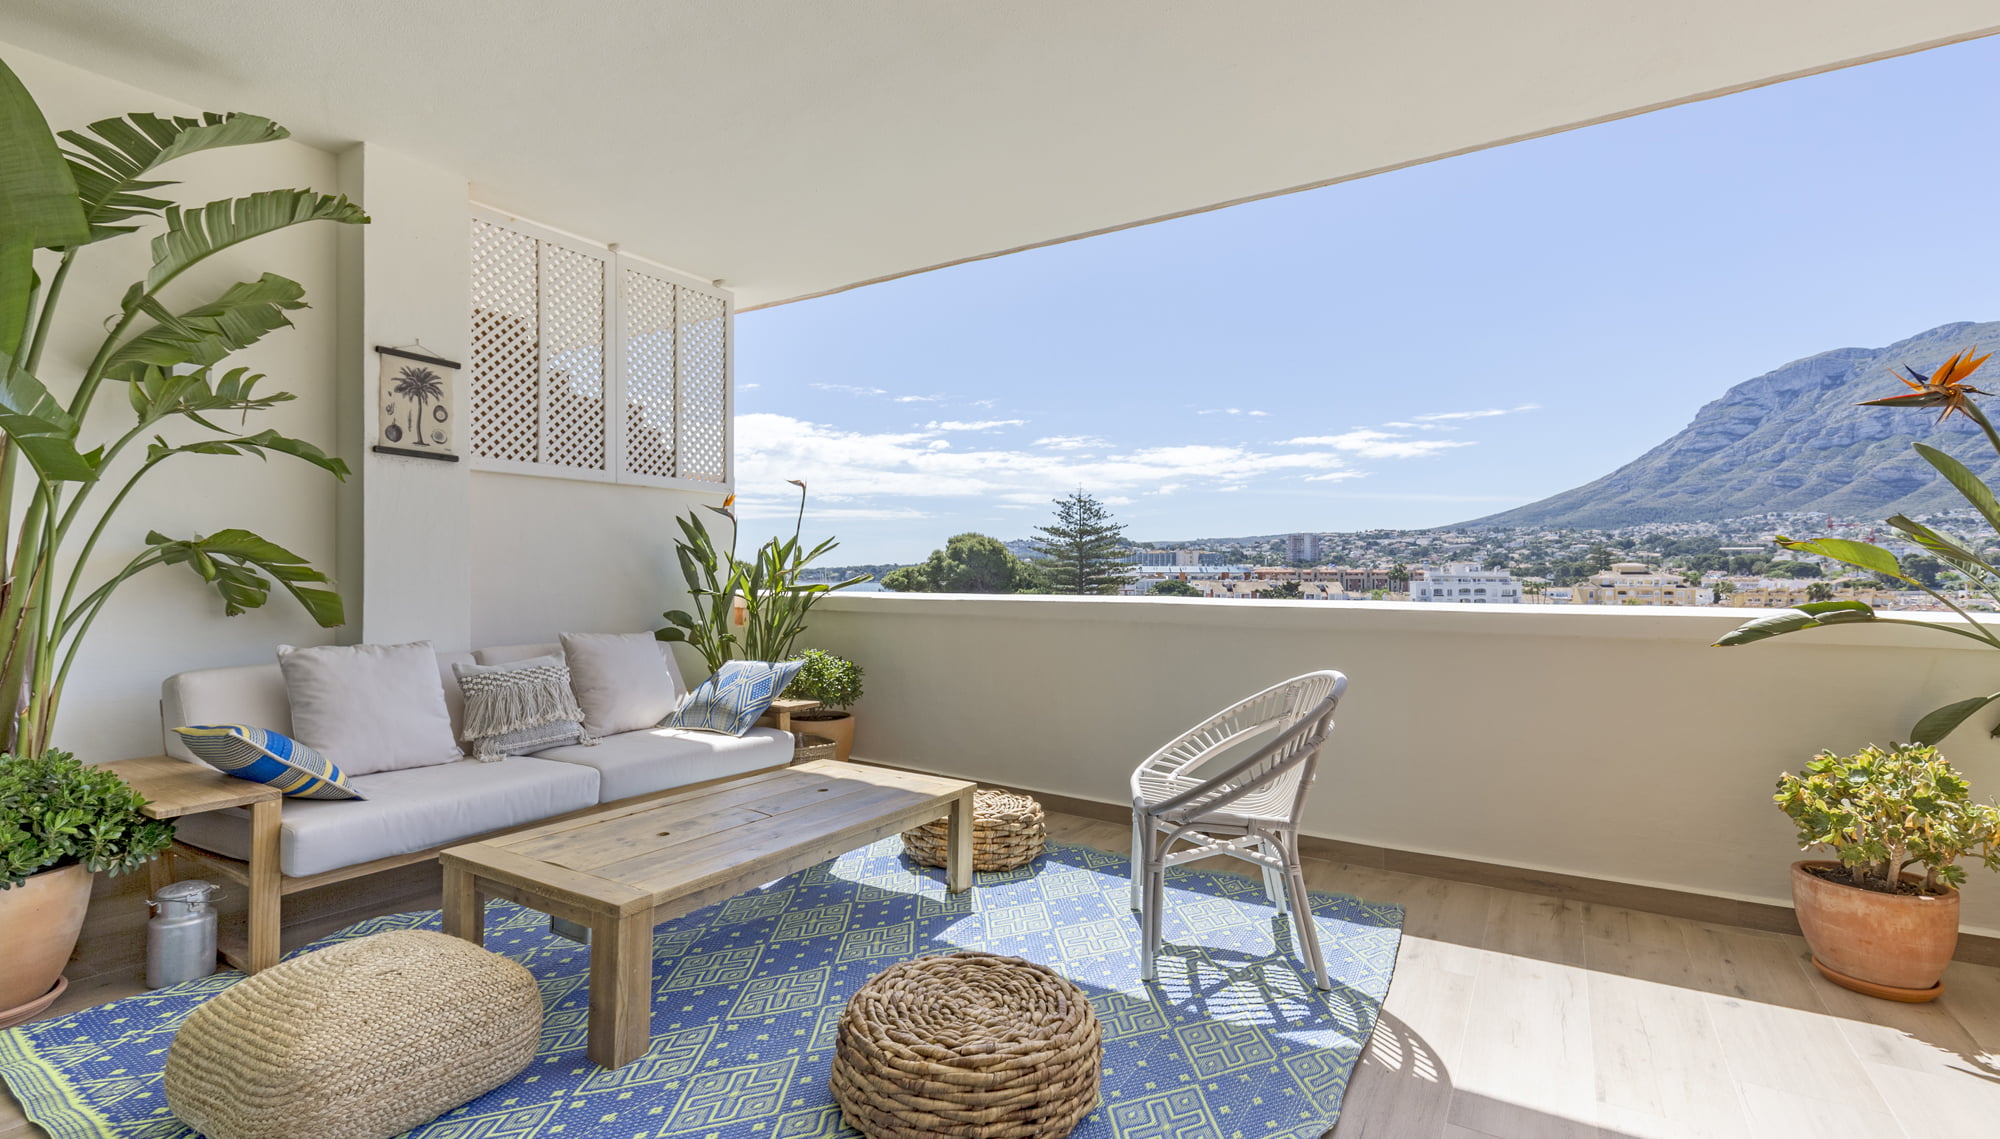 Terraza con espectaculares vistas de Casa Ona – QB arquitectos